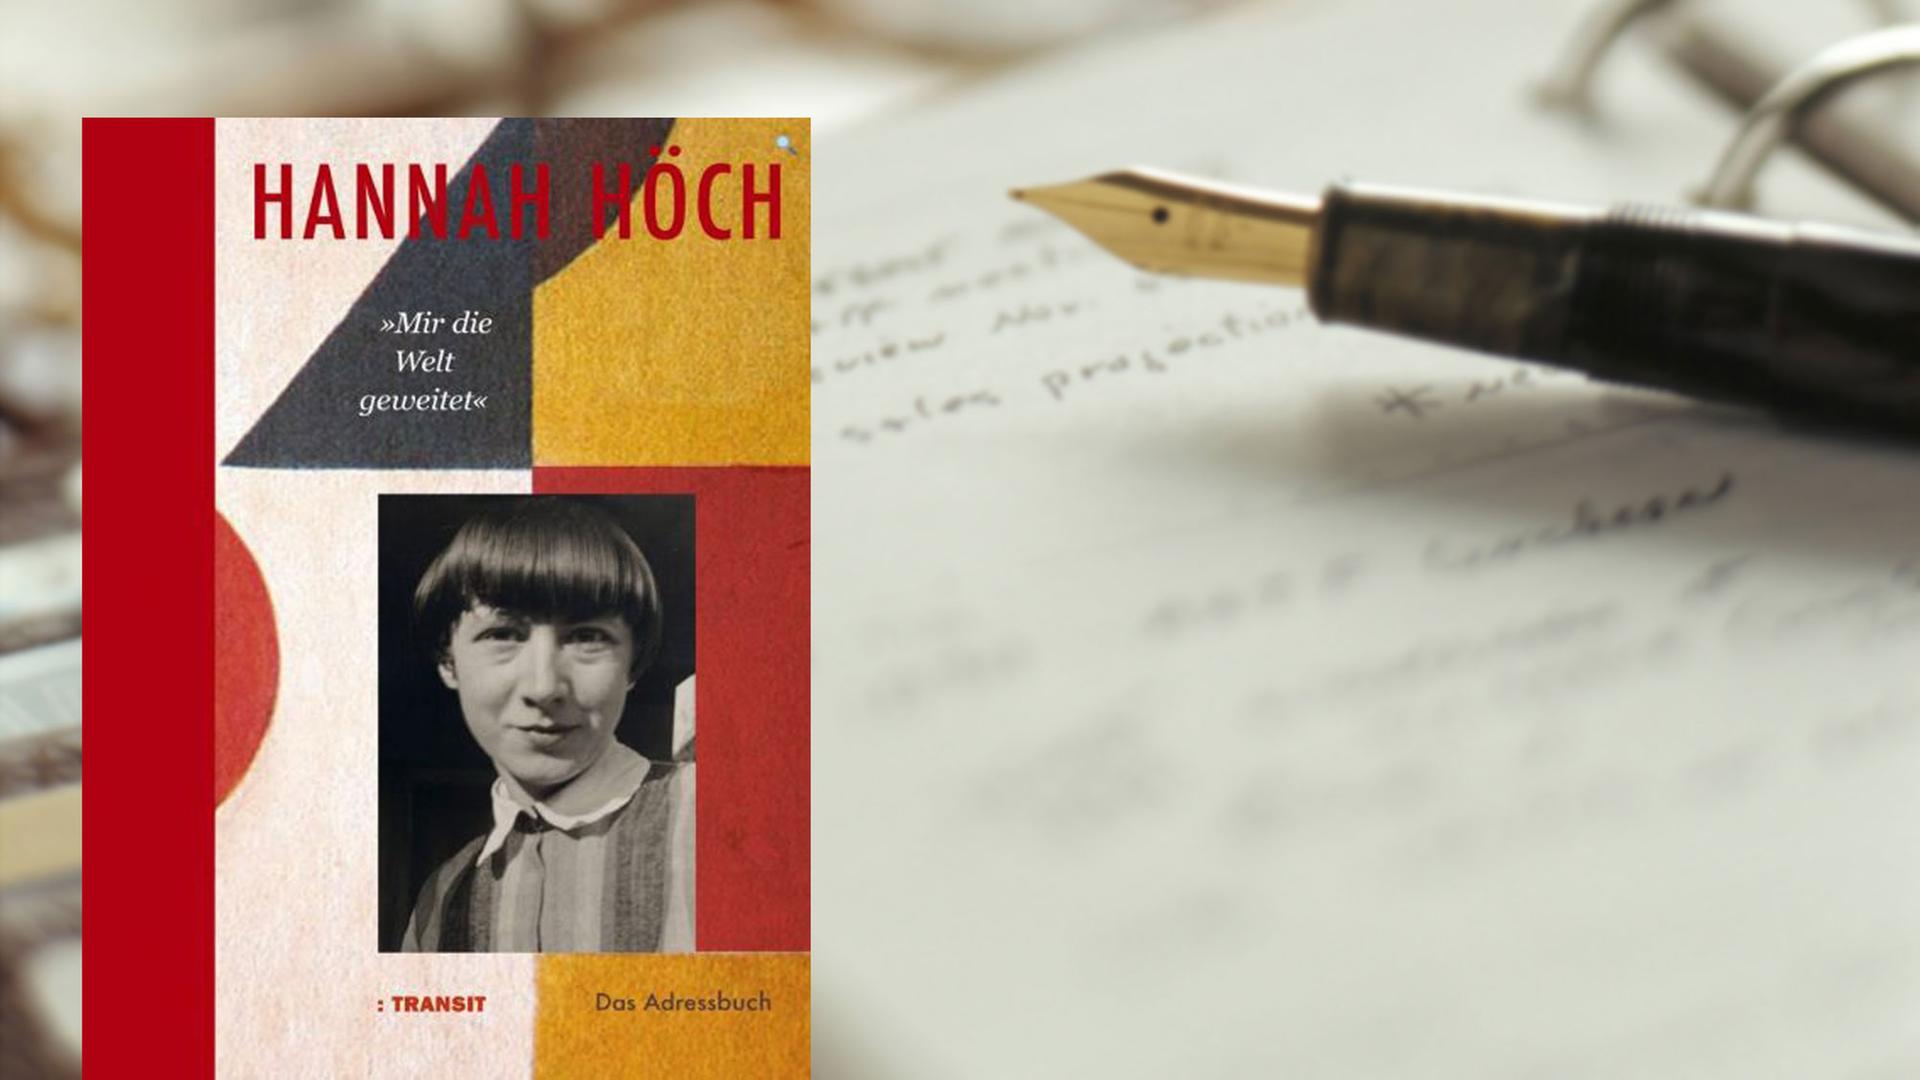 Buchcover: "Hannah Höch: Mir die Welt geweitet. Das Adressbuch"